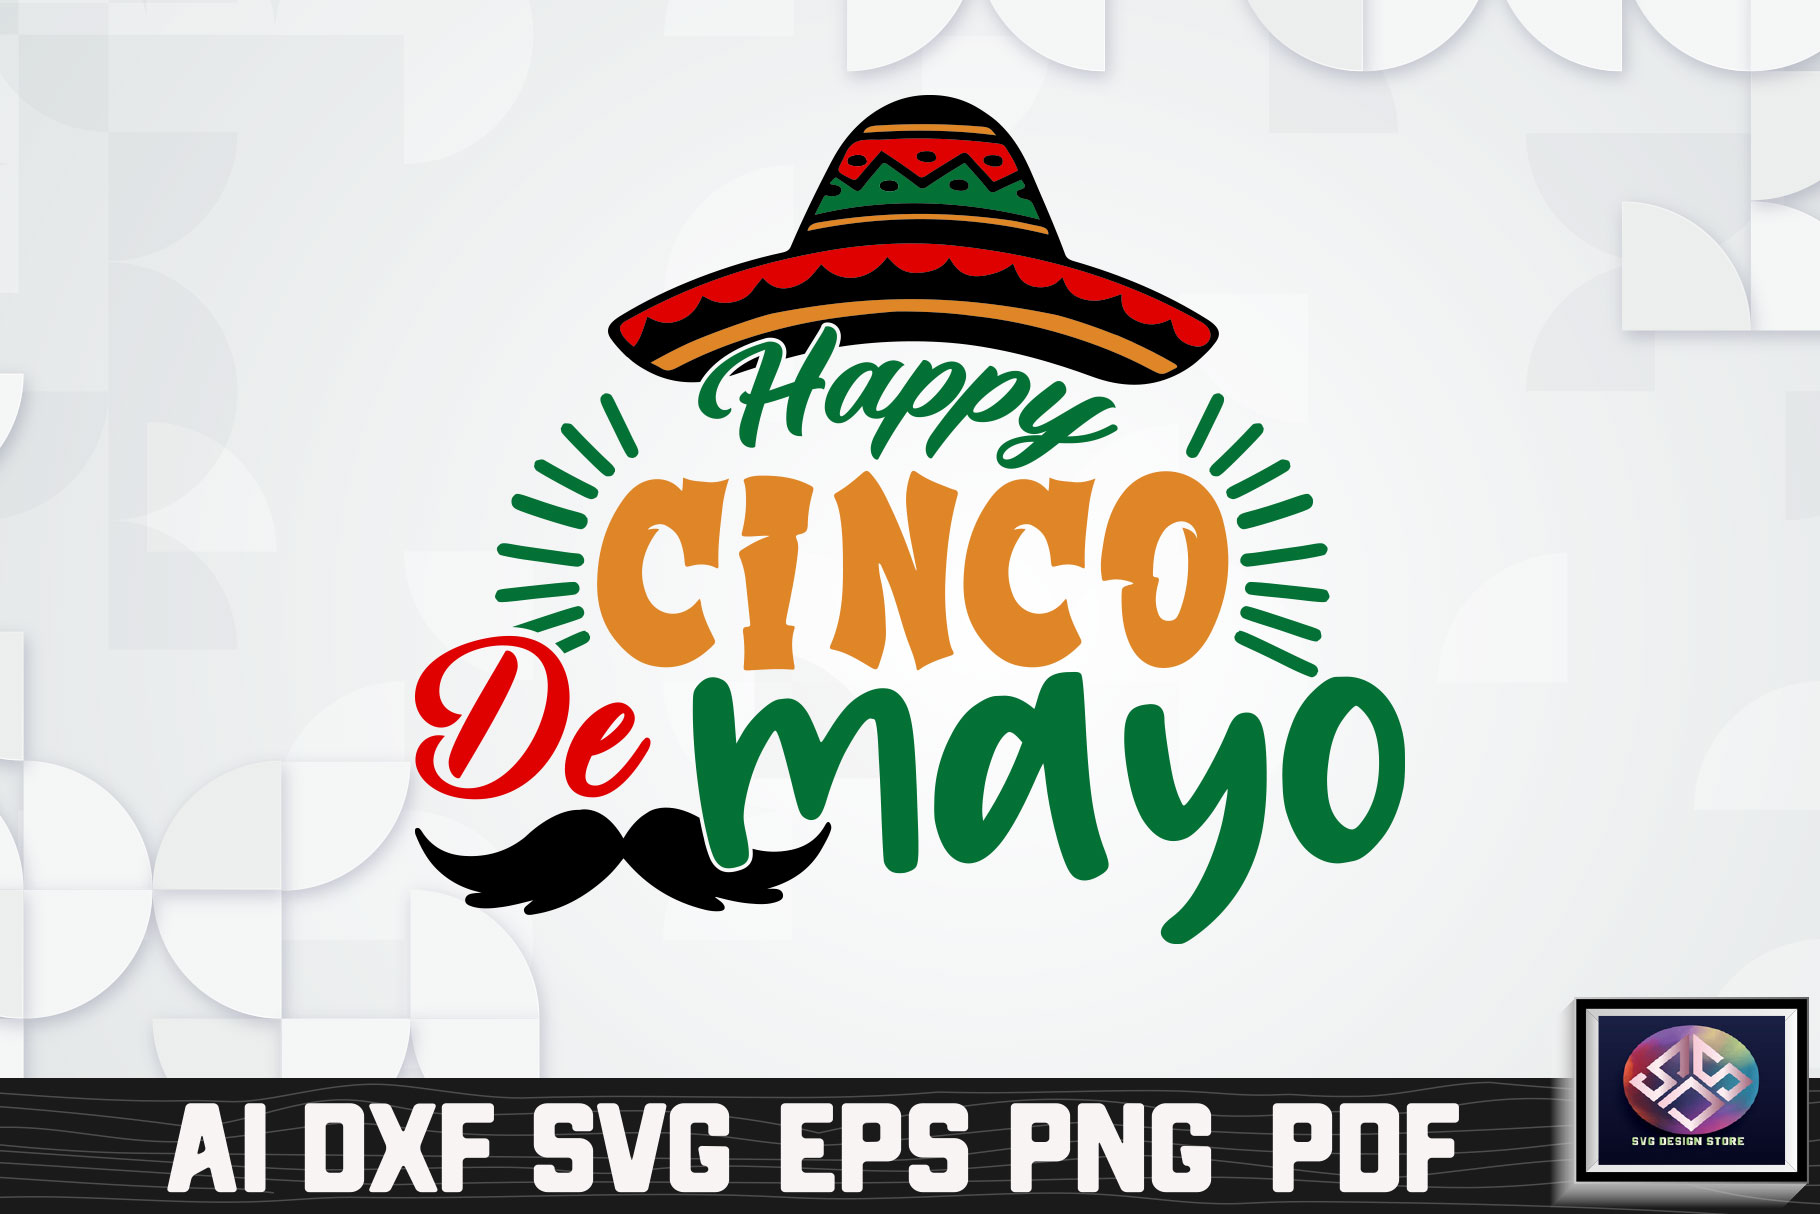 Happy cinco de mayo with a mustache and a sombrero.